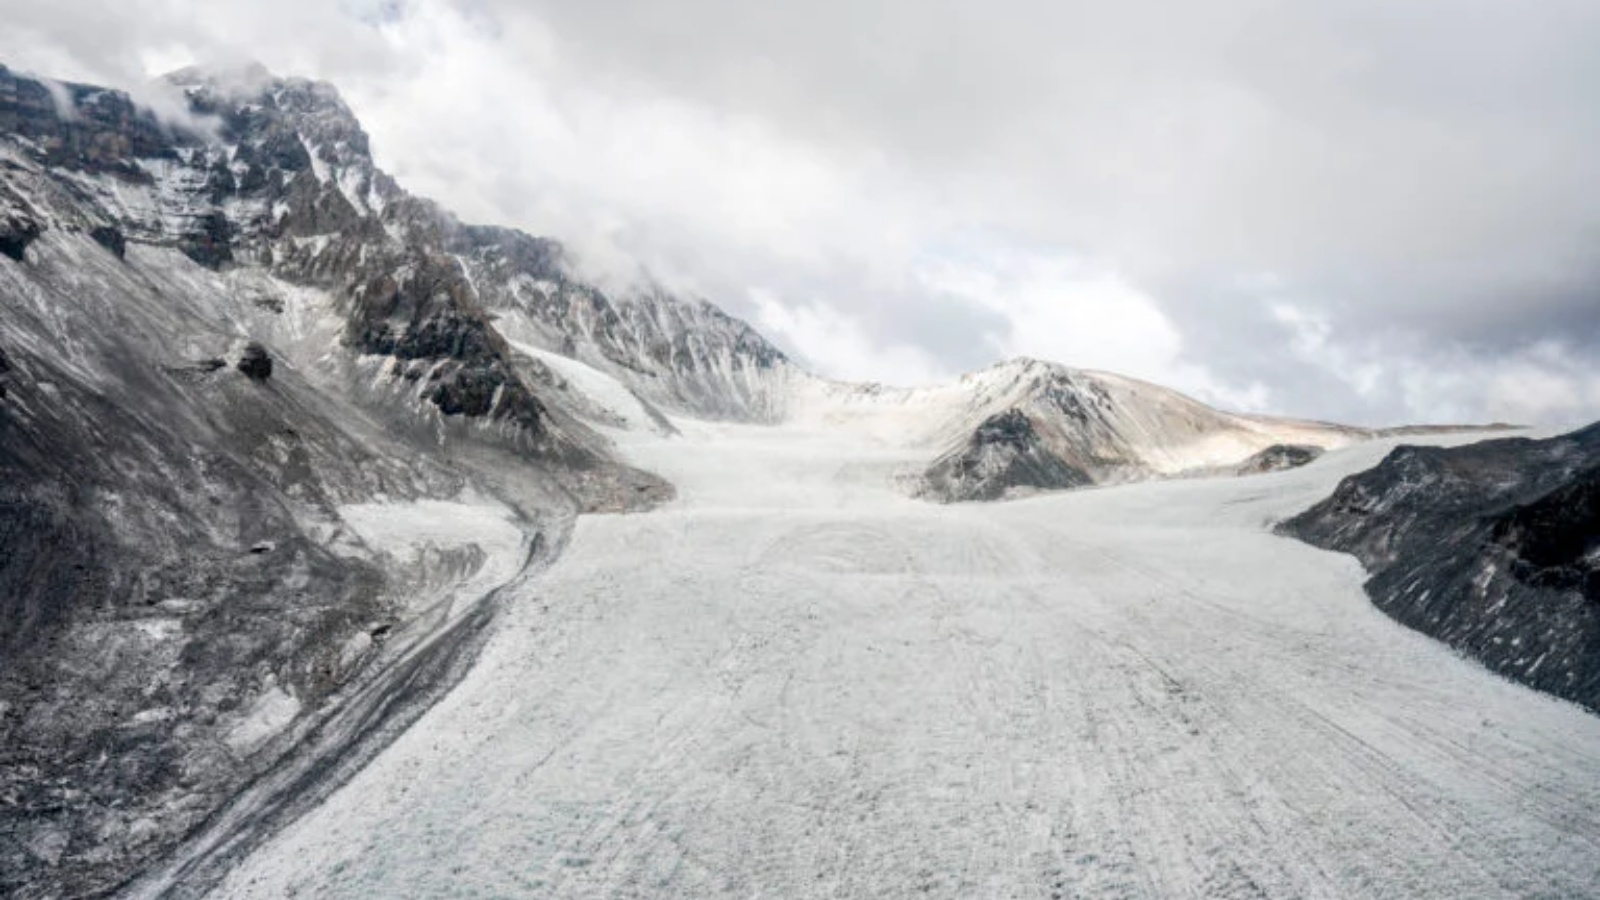 منظر جوي لمتنزه الأنهار الجليدية الوطنية الذي تم إنشاؤه حديثًا في كاجون دي مايبو، على بعد حوالى 60 كيلومترًا من العاصمة التشيلية سانتياغو